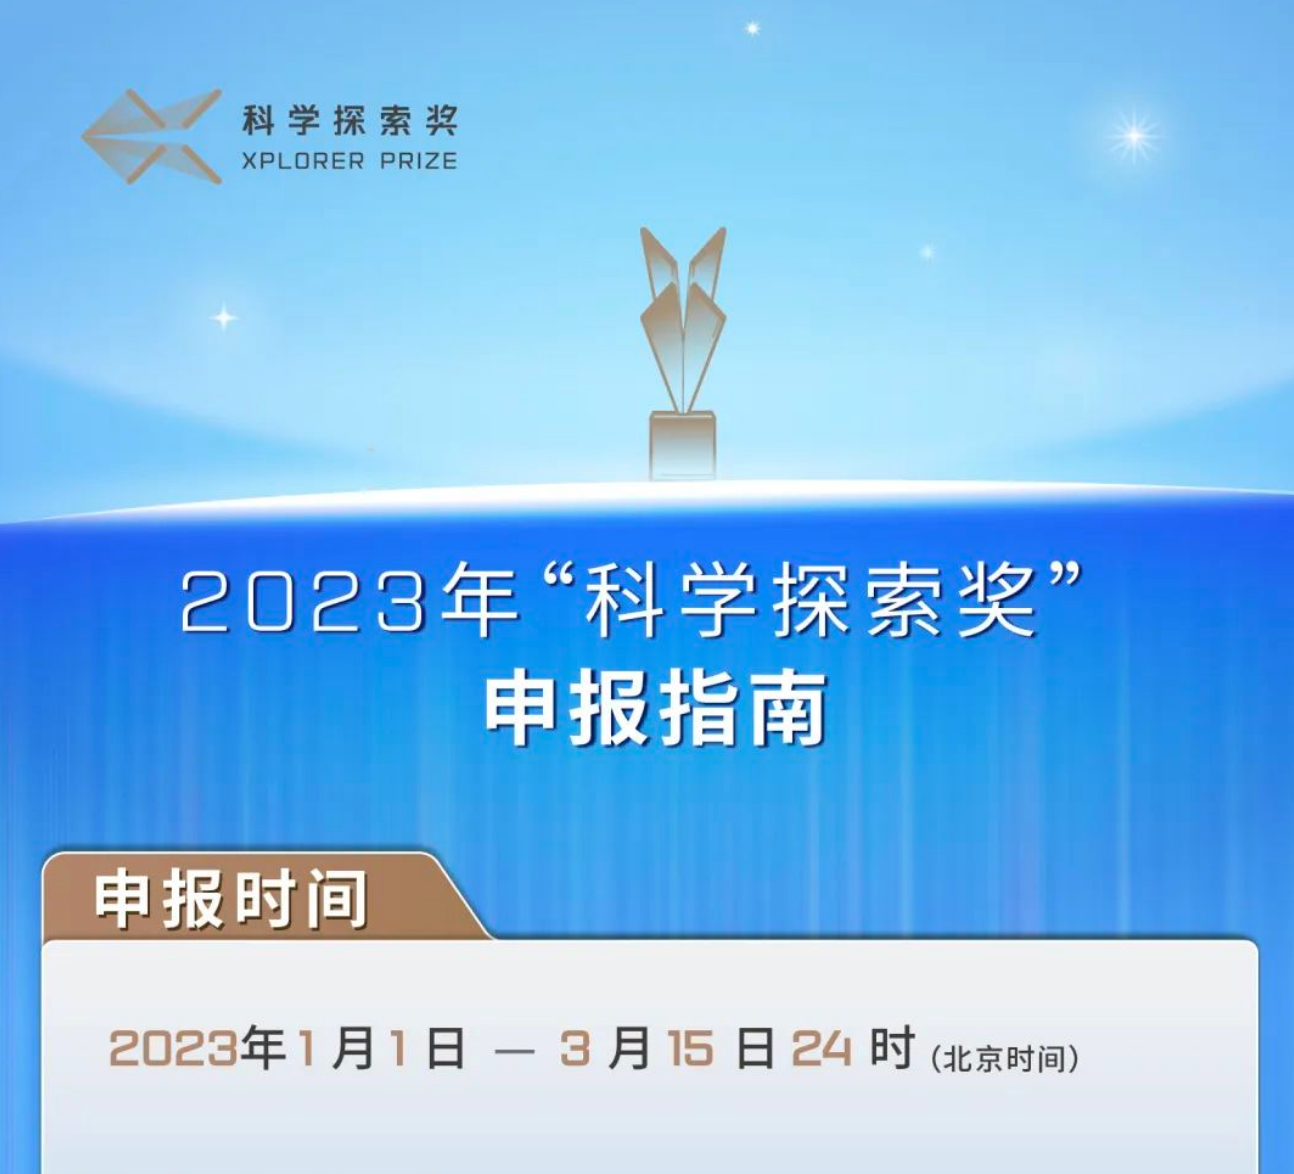 转发：《2023年“科学探索奖”申报启动》